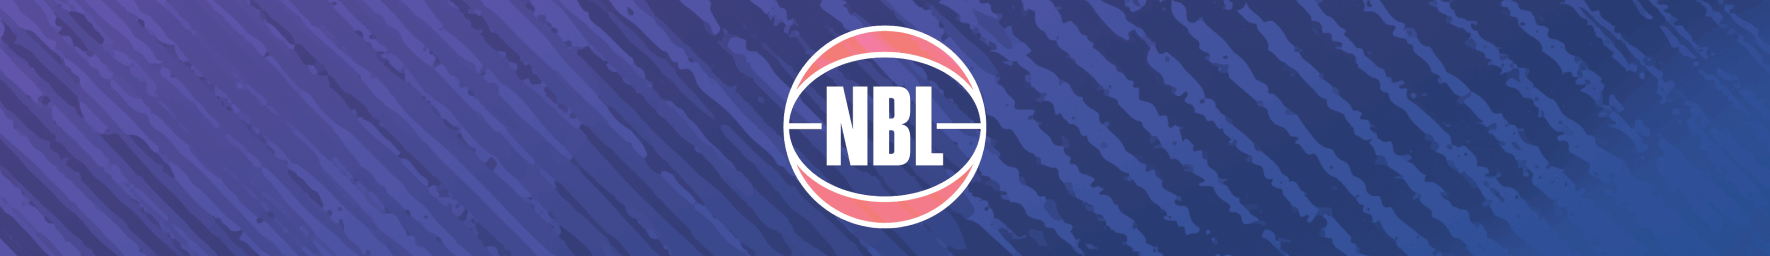 Australijska Narodowa Liga Koszykówki